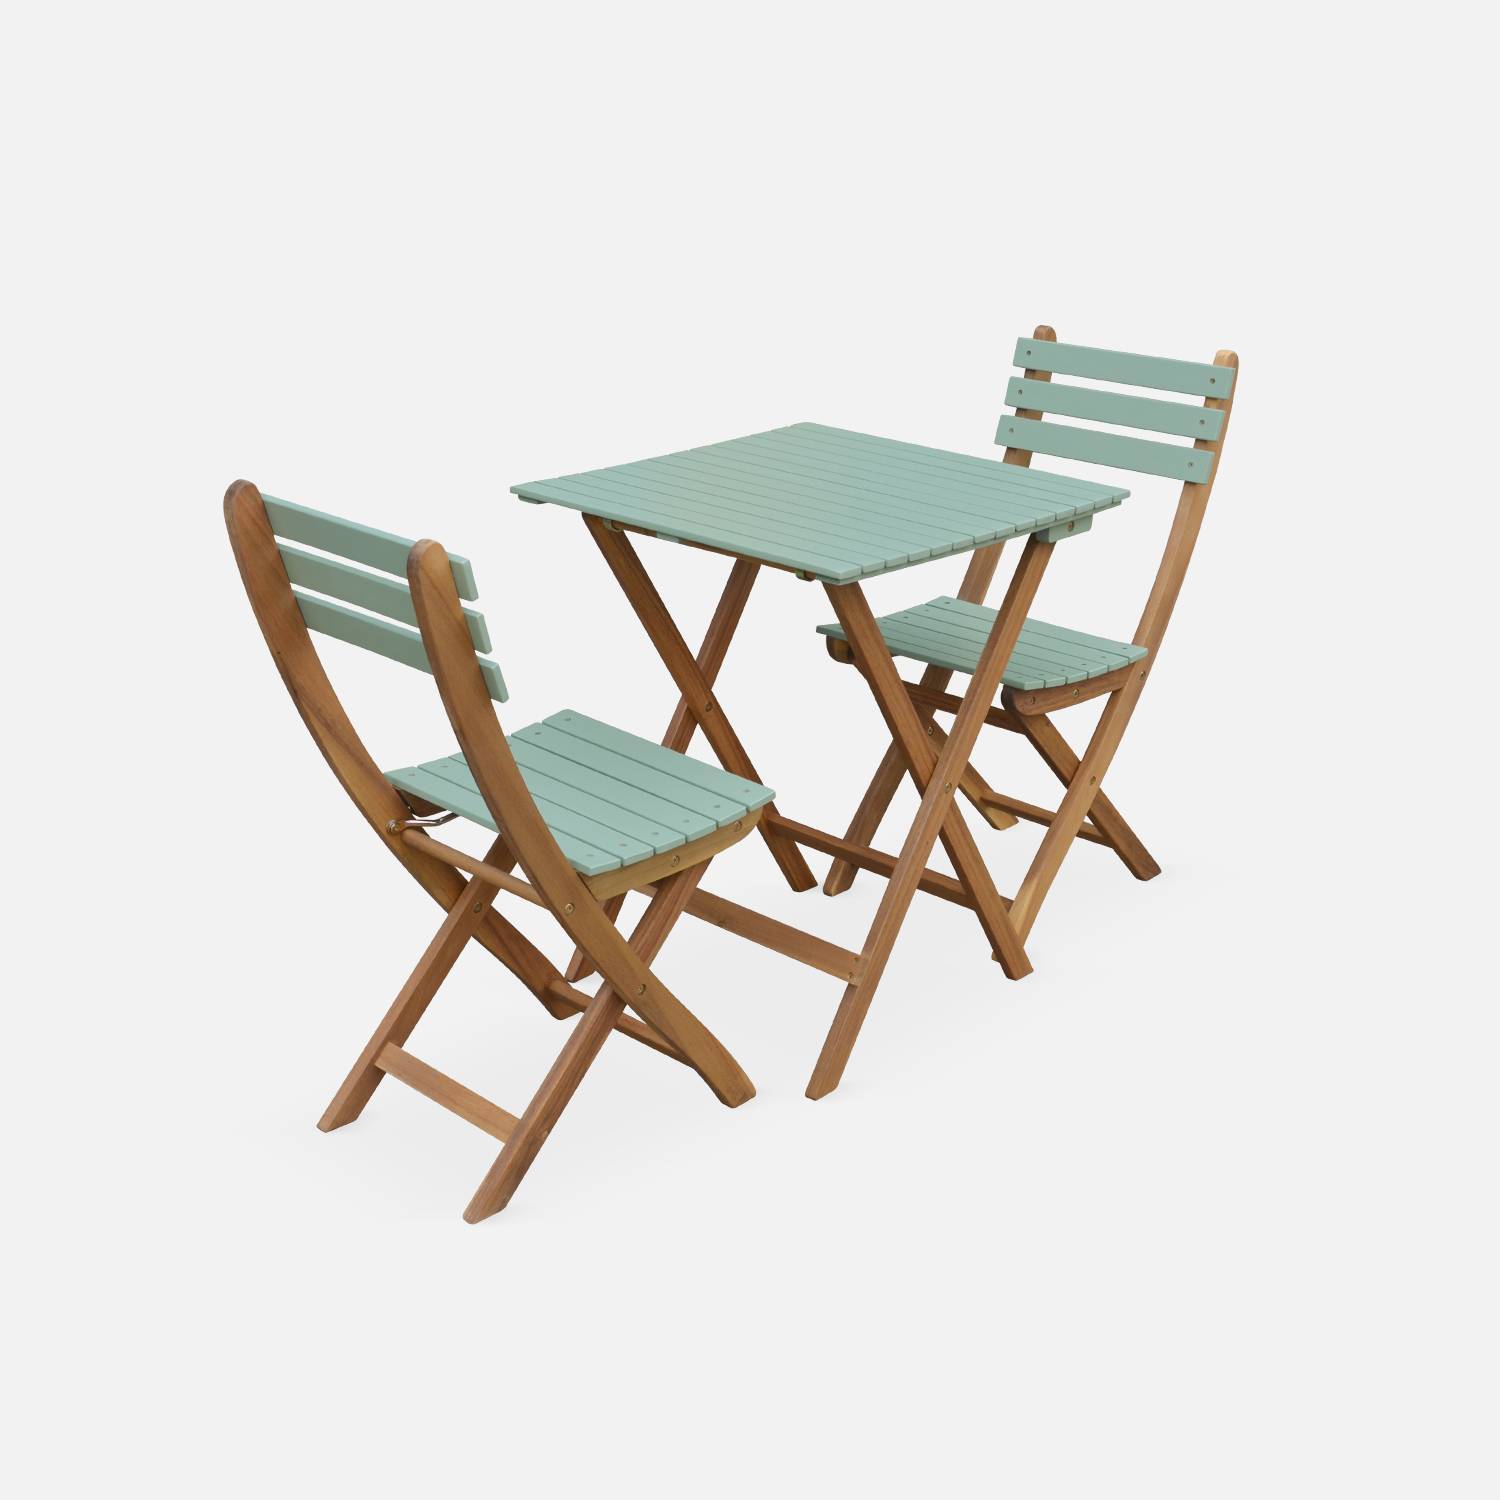 Conjunto de jardín de madera Bistro 60x60cm - Barcelona - verde grisáceo, mesa plegable bicolor con 2 sillas plegables, acacia | sweeek